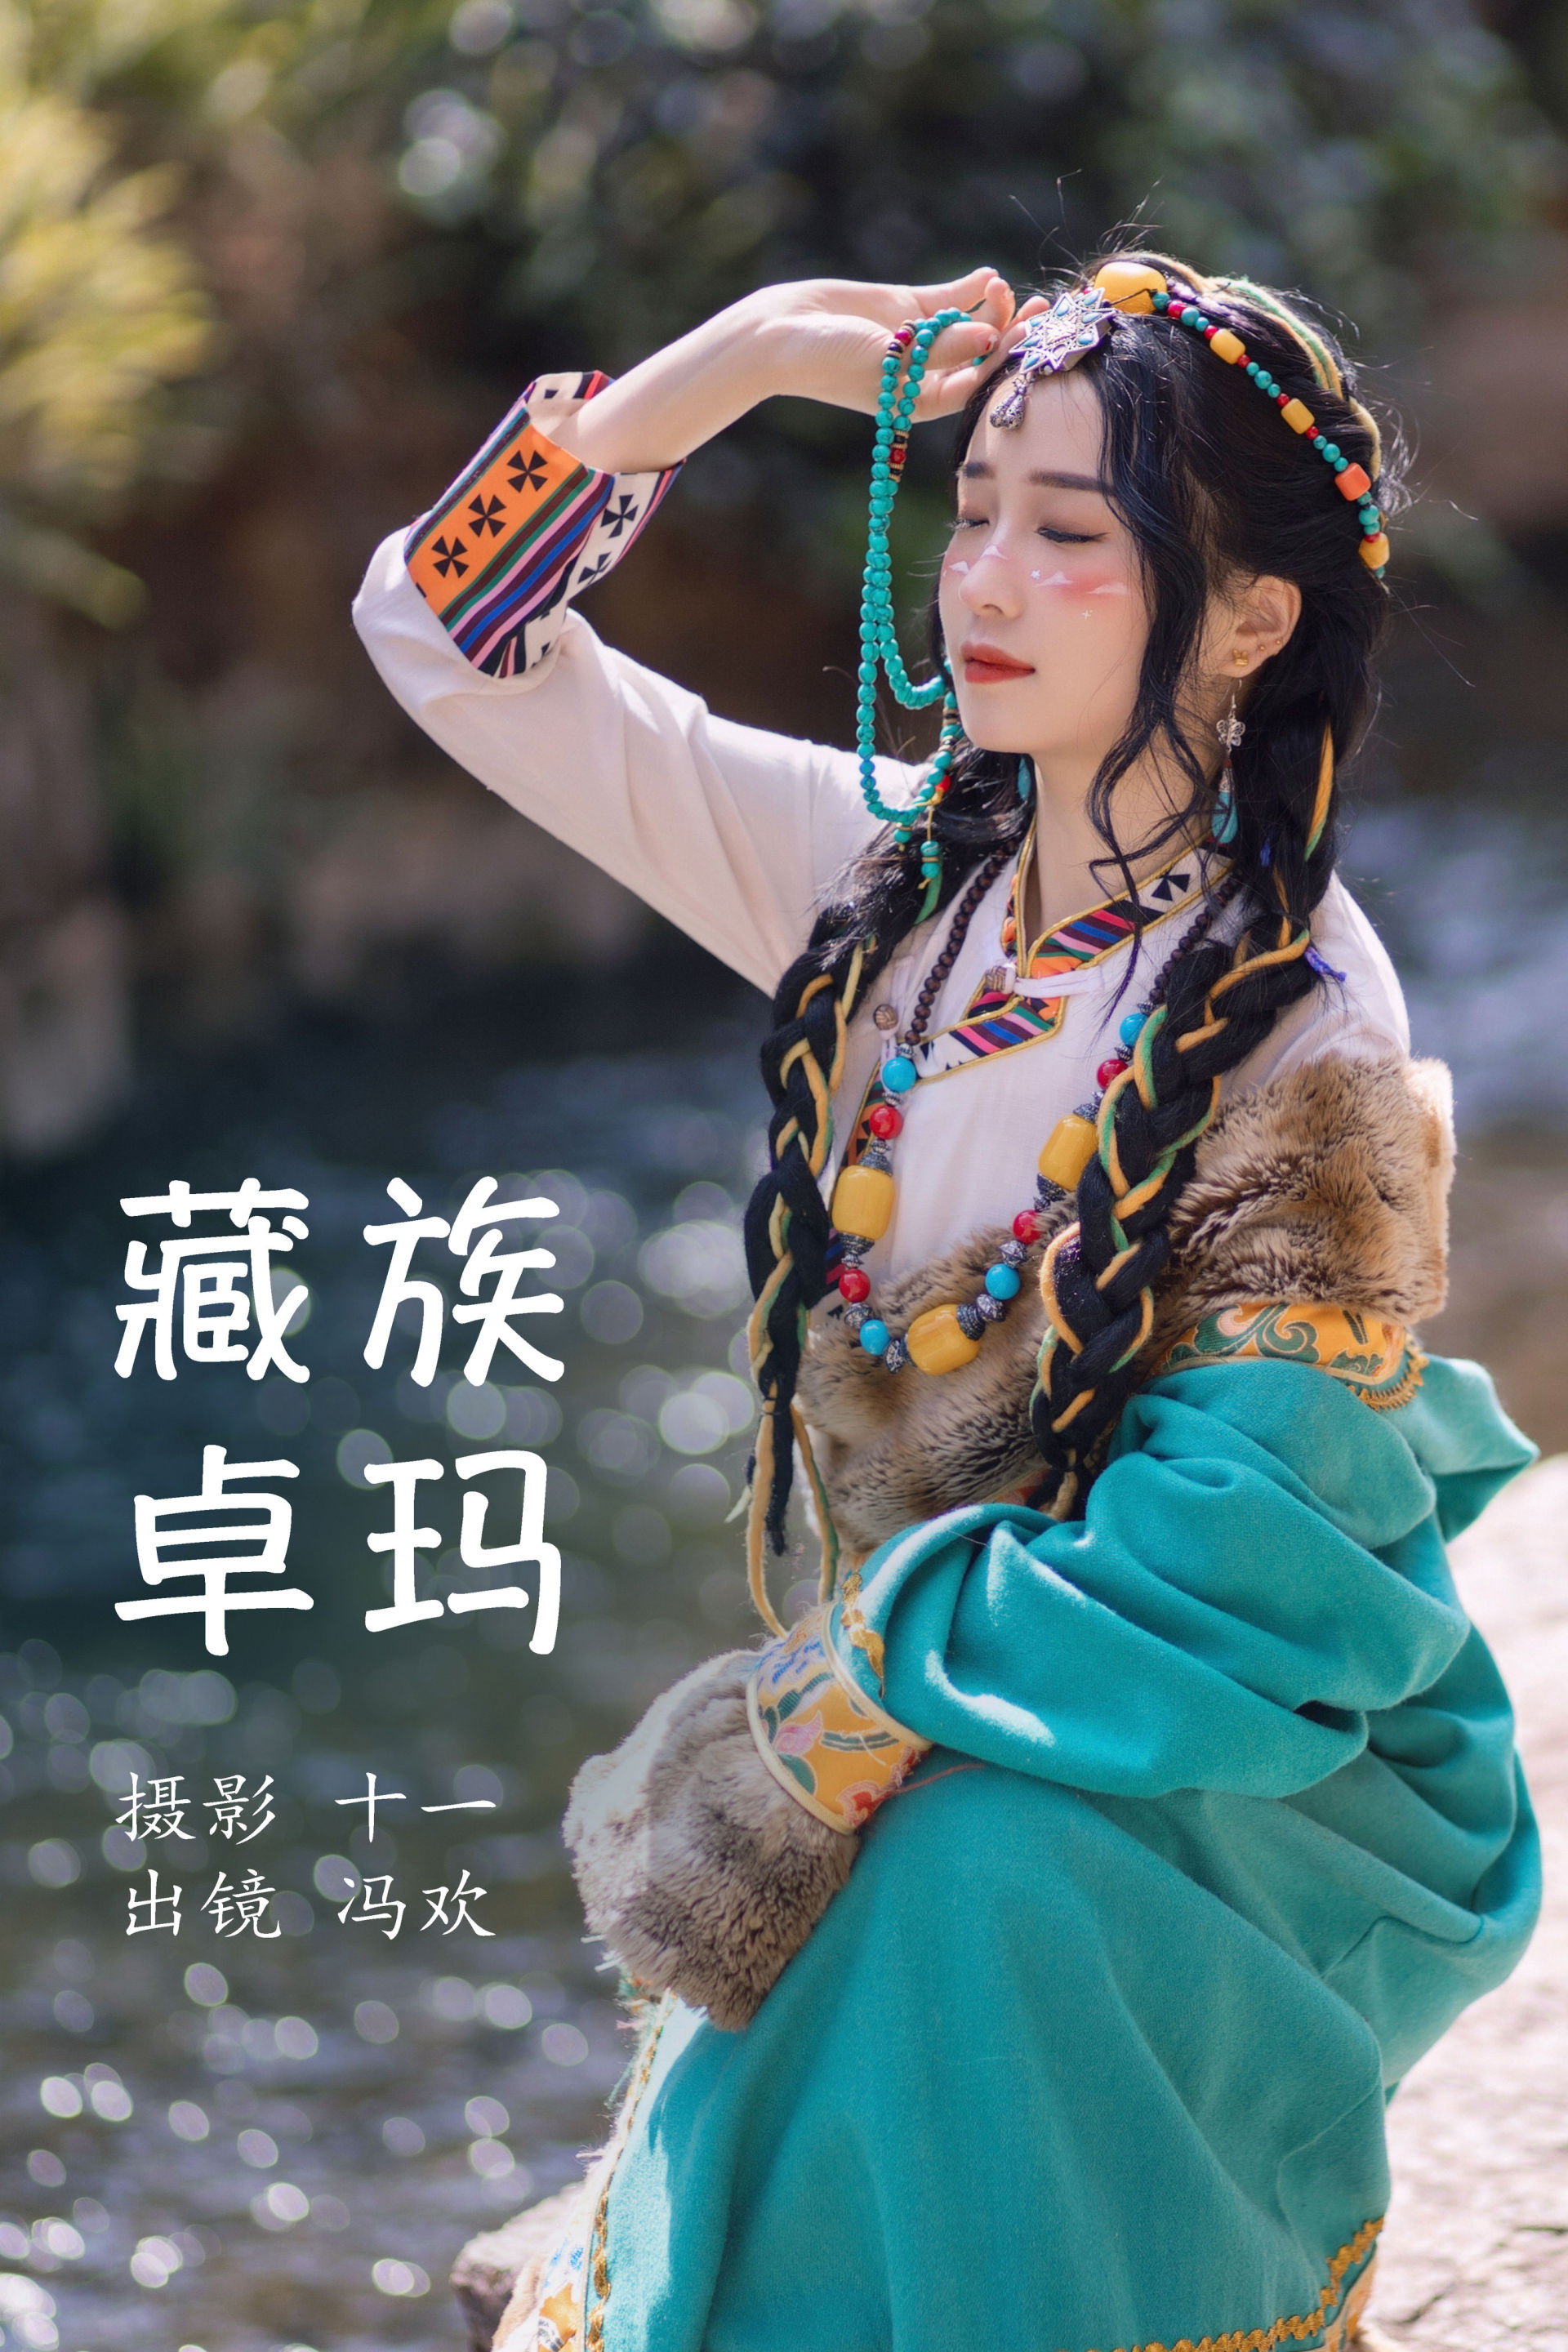 藏族卓玛 藏族 姑娘 少女 写真 清纯 漂亮 民族风